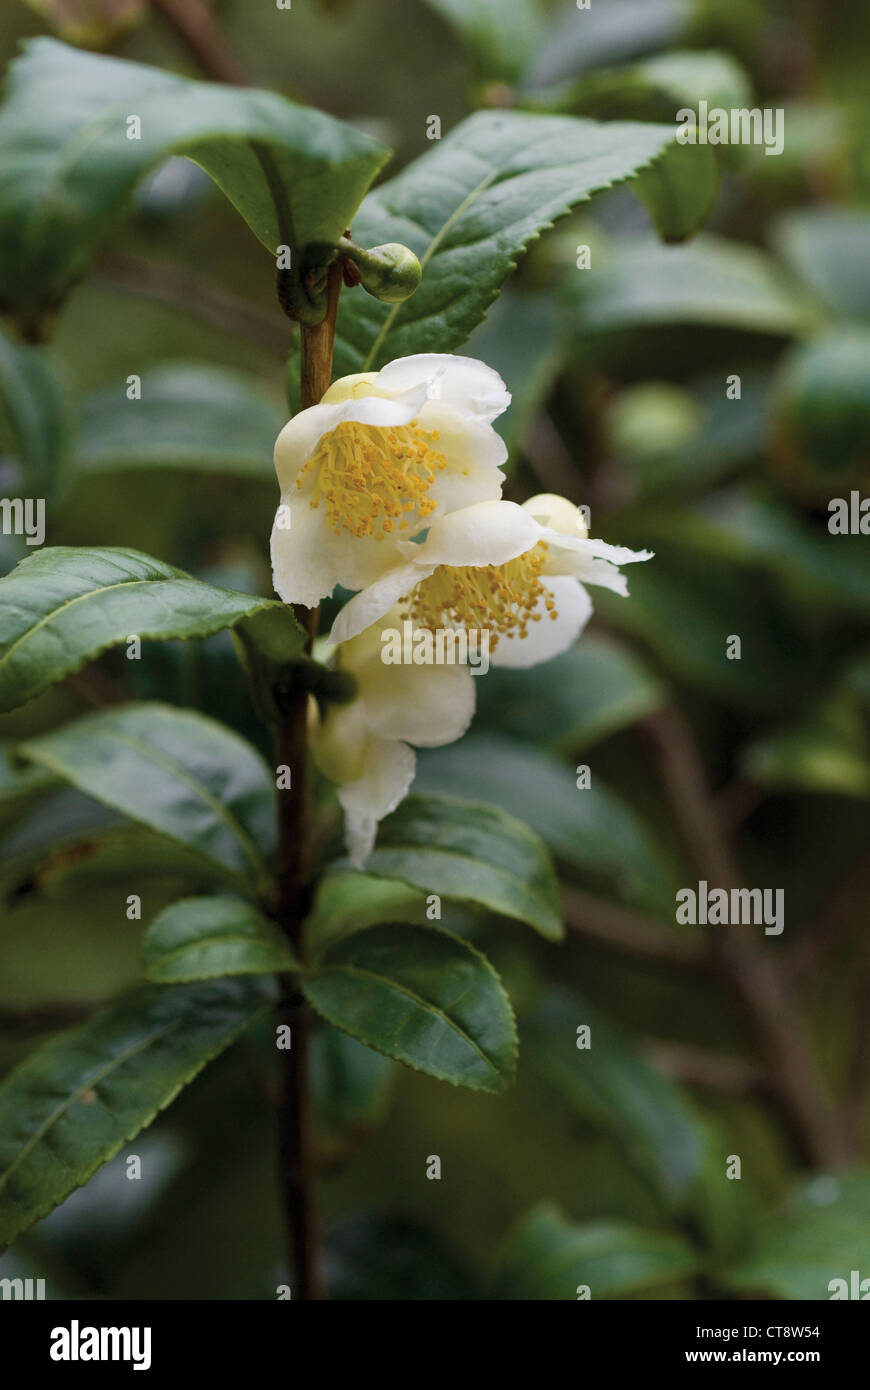 Camellia sinensis, Tea plant Stock Photo